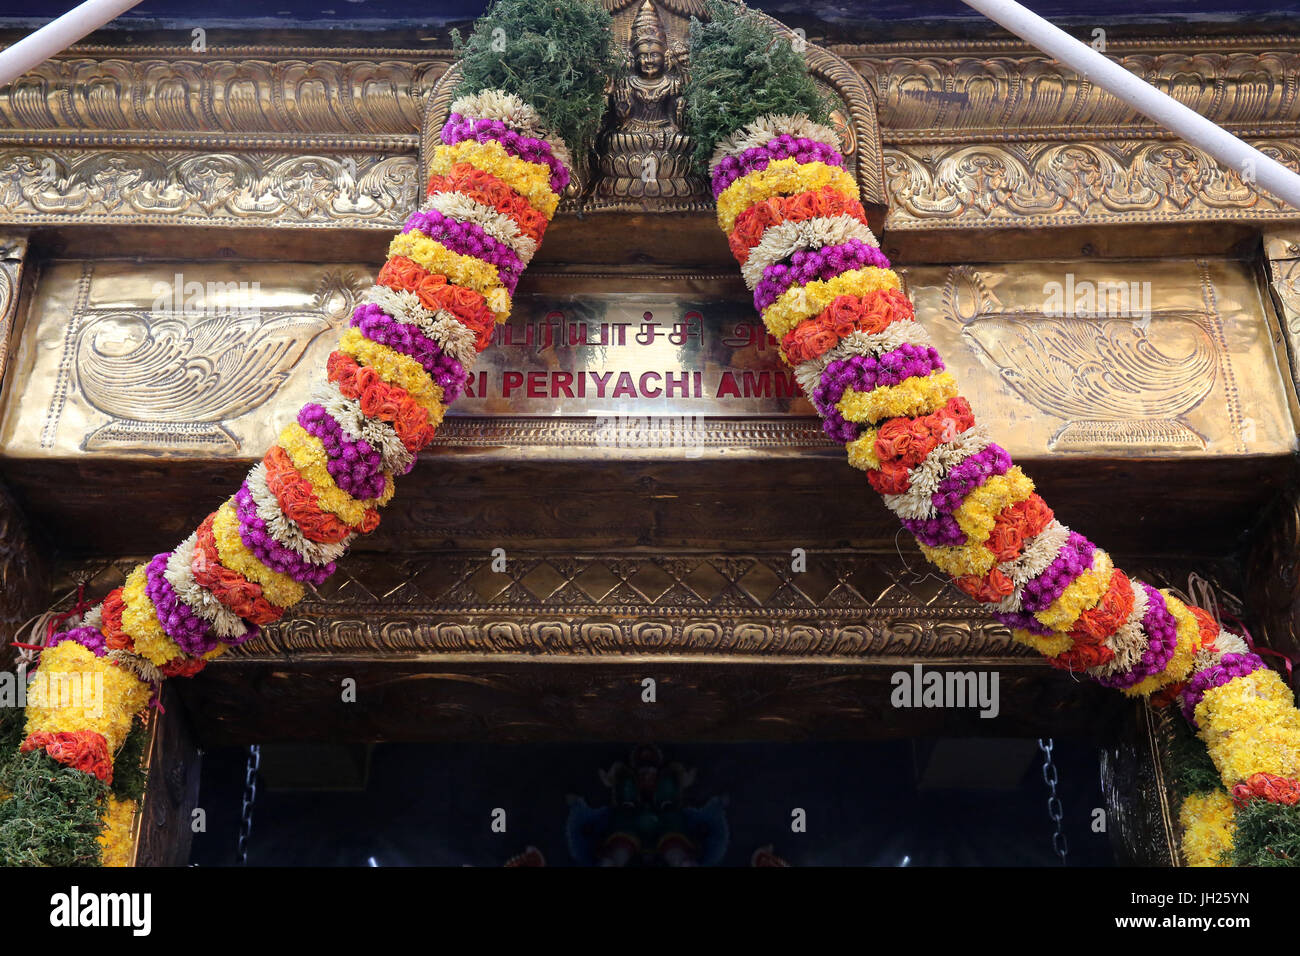 Sri Veeramakaliamman Templo Hindú. : Sri Periachi deidad hindú. Una madre de todos los seres vivos. Singapur. Foto de stock